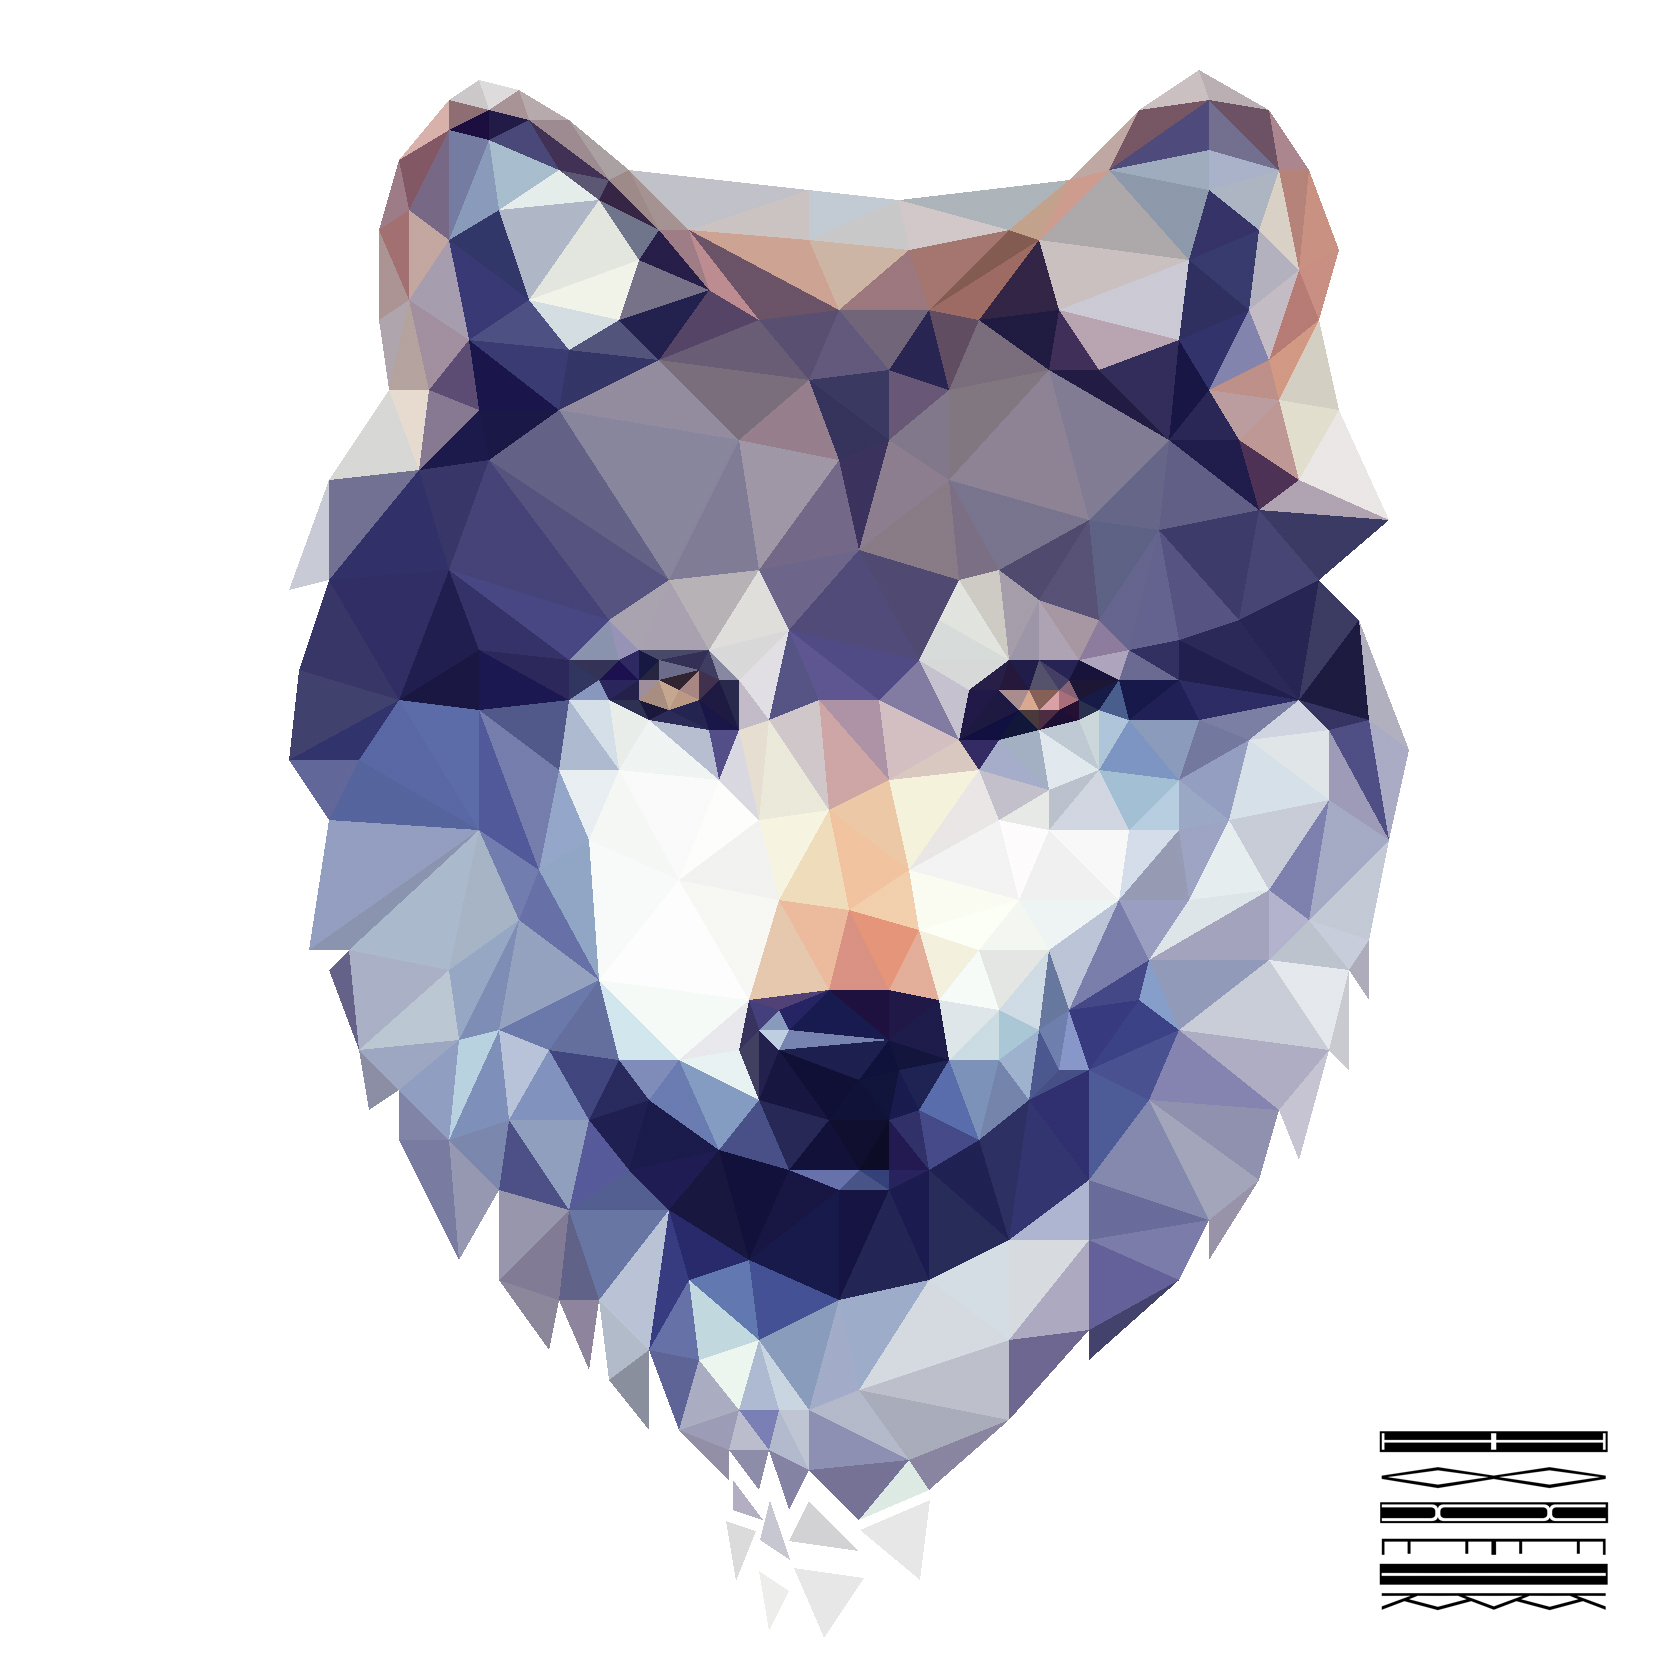 Photoshop Polygonal Design - Wolfie by nighthawk0161 on DeviantArt